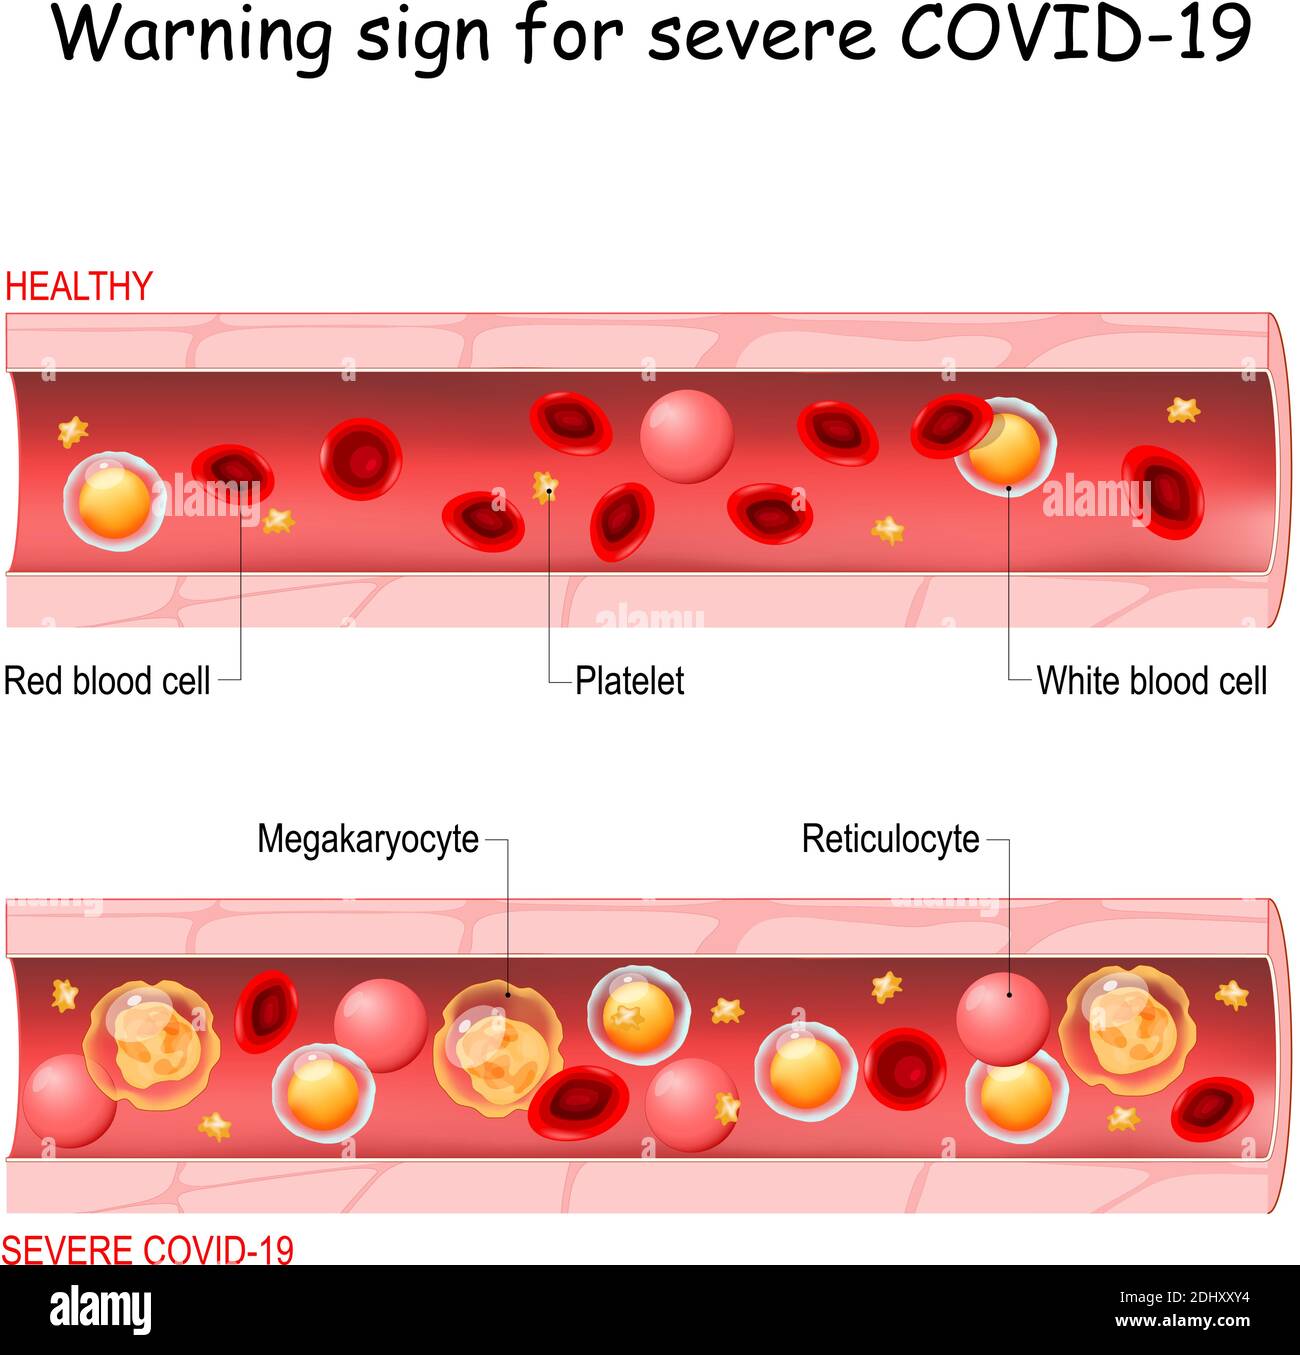 COVID-19. Segnale di avvertimento per sindrome respiratoria acuta grave coronavirus malattia individuazione di complicazioni gravi. Due vasi sanguigni Illustrazione Vettoriale